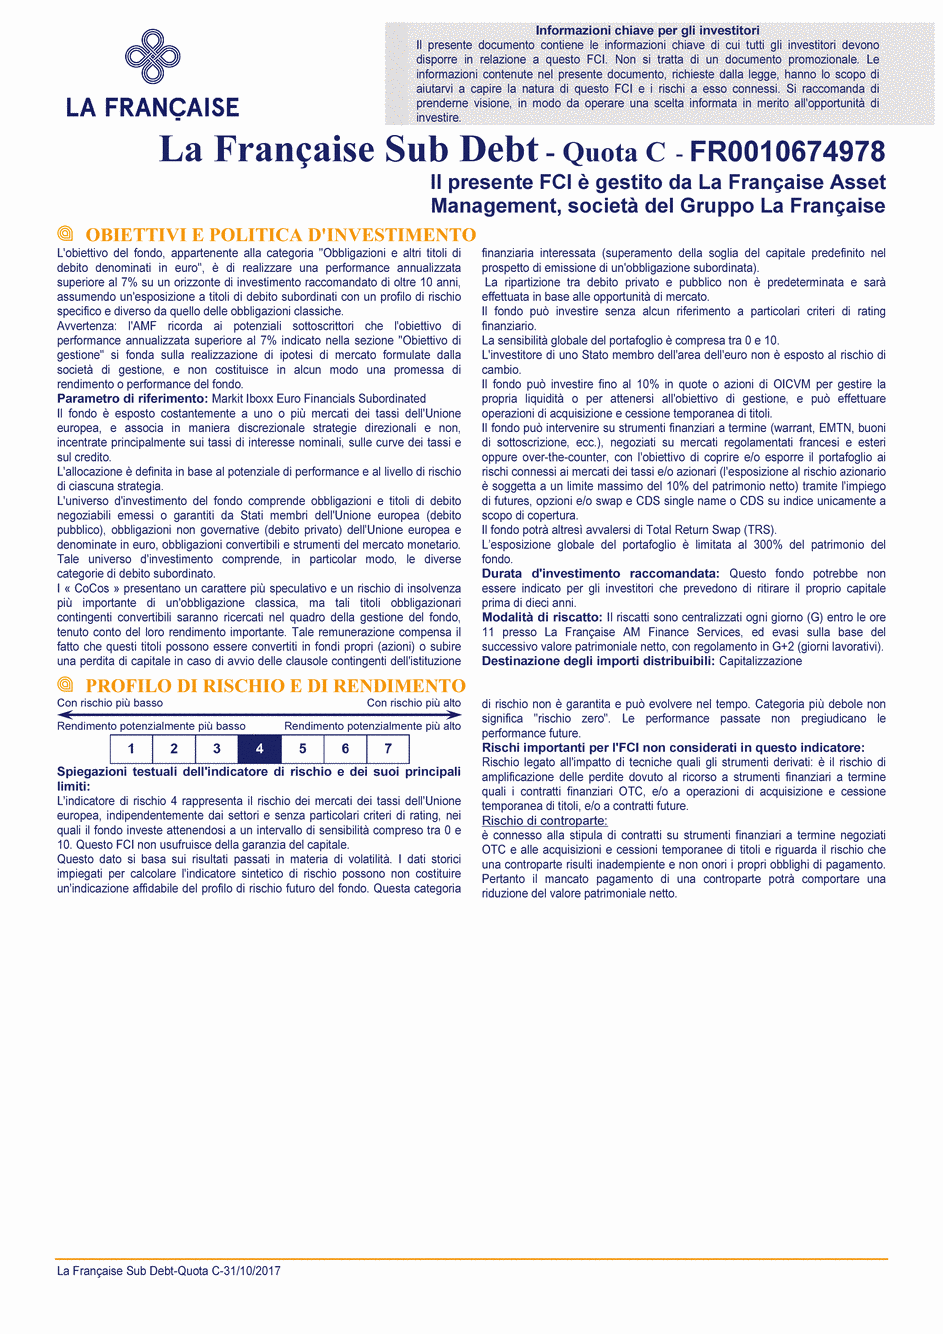 DICI La Française Sub Debt - Part C - 31/10/2017 - Italien